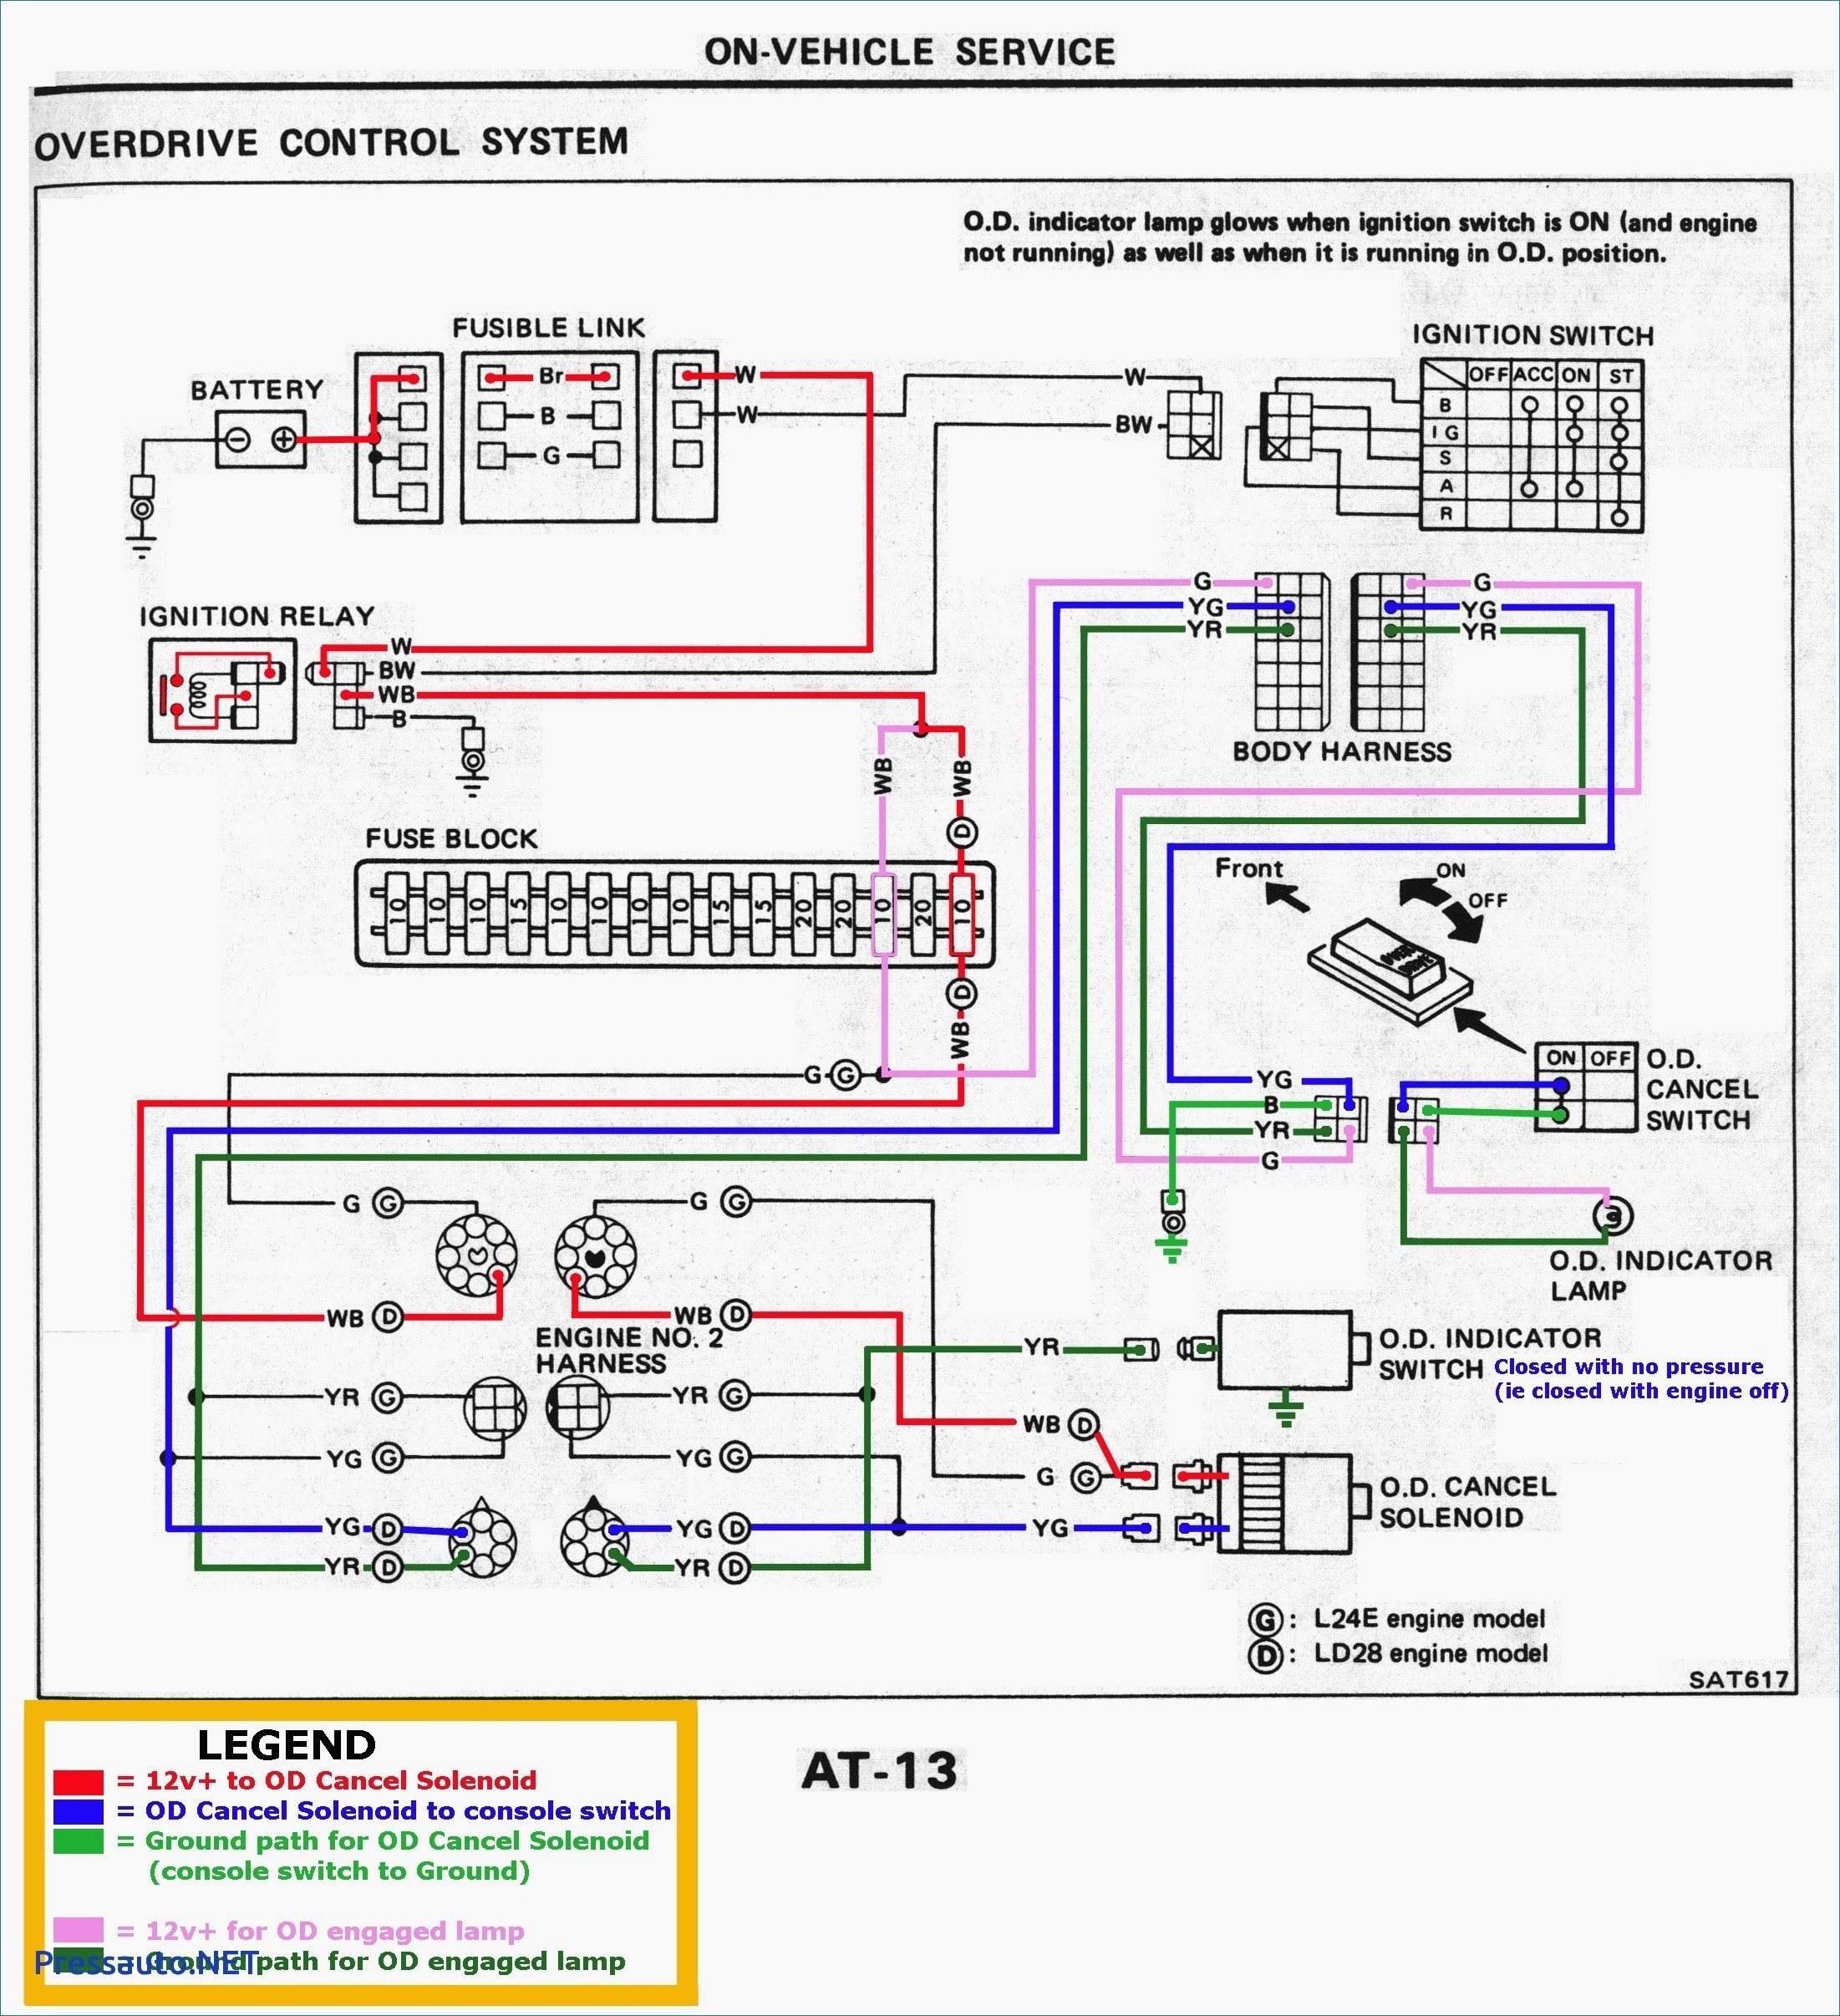 subaru wiring diagram color codes wiring diagram color abbreviations new wiring diagram color codes unique s